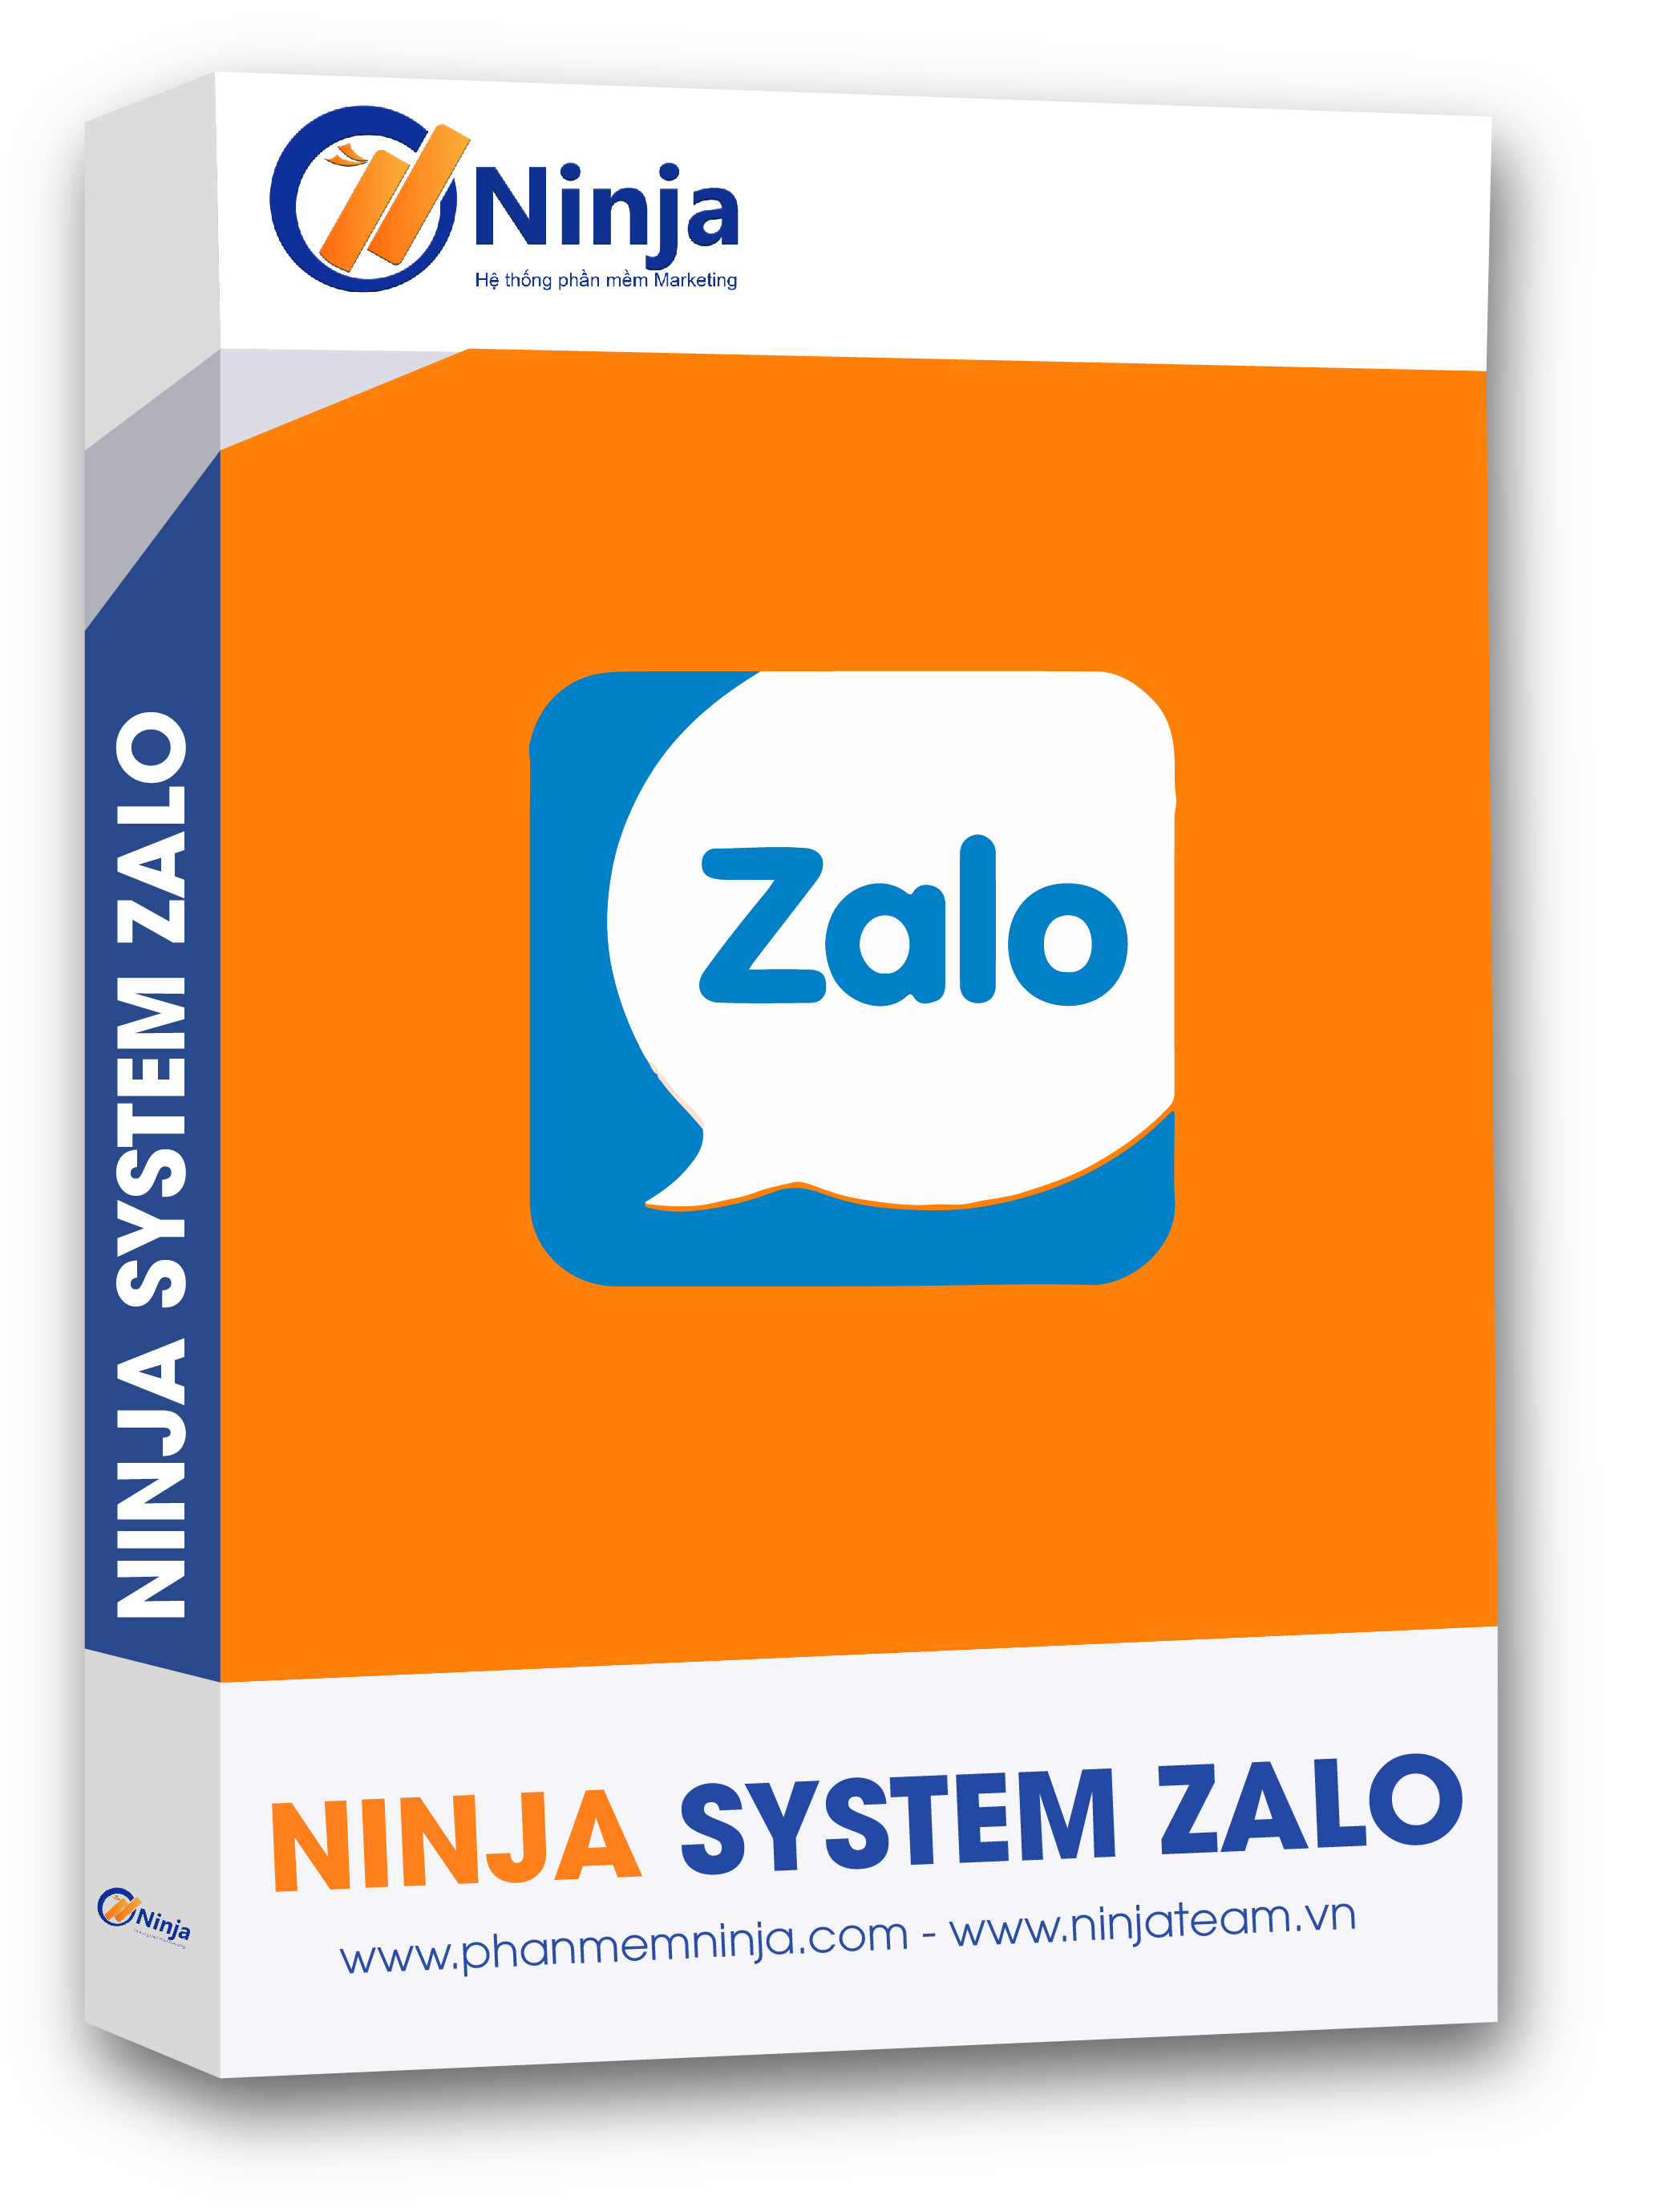 Ninja System Zalo được phát triển bởi công ty Ninja